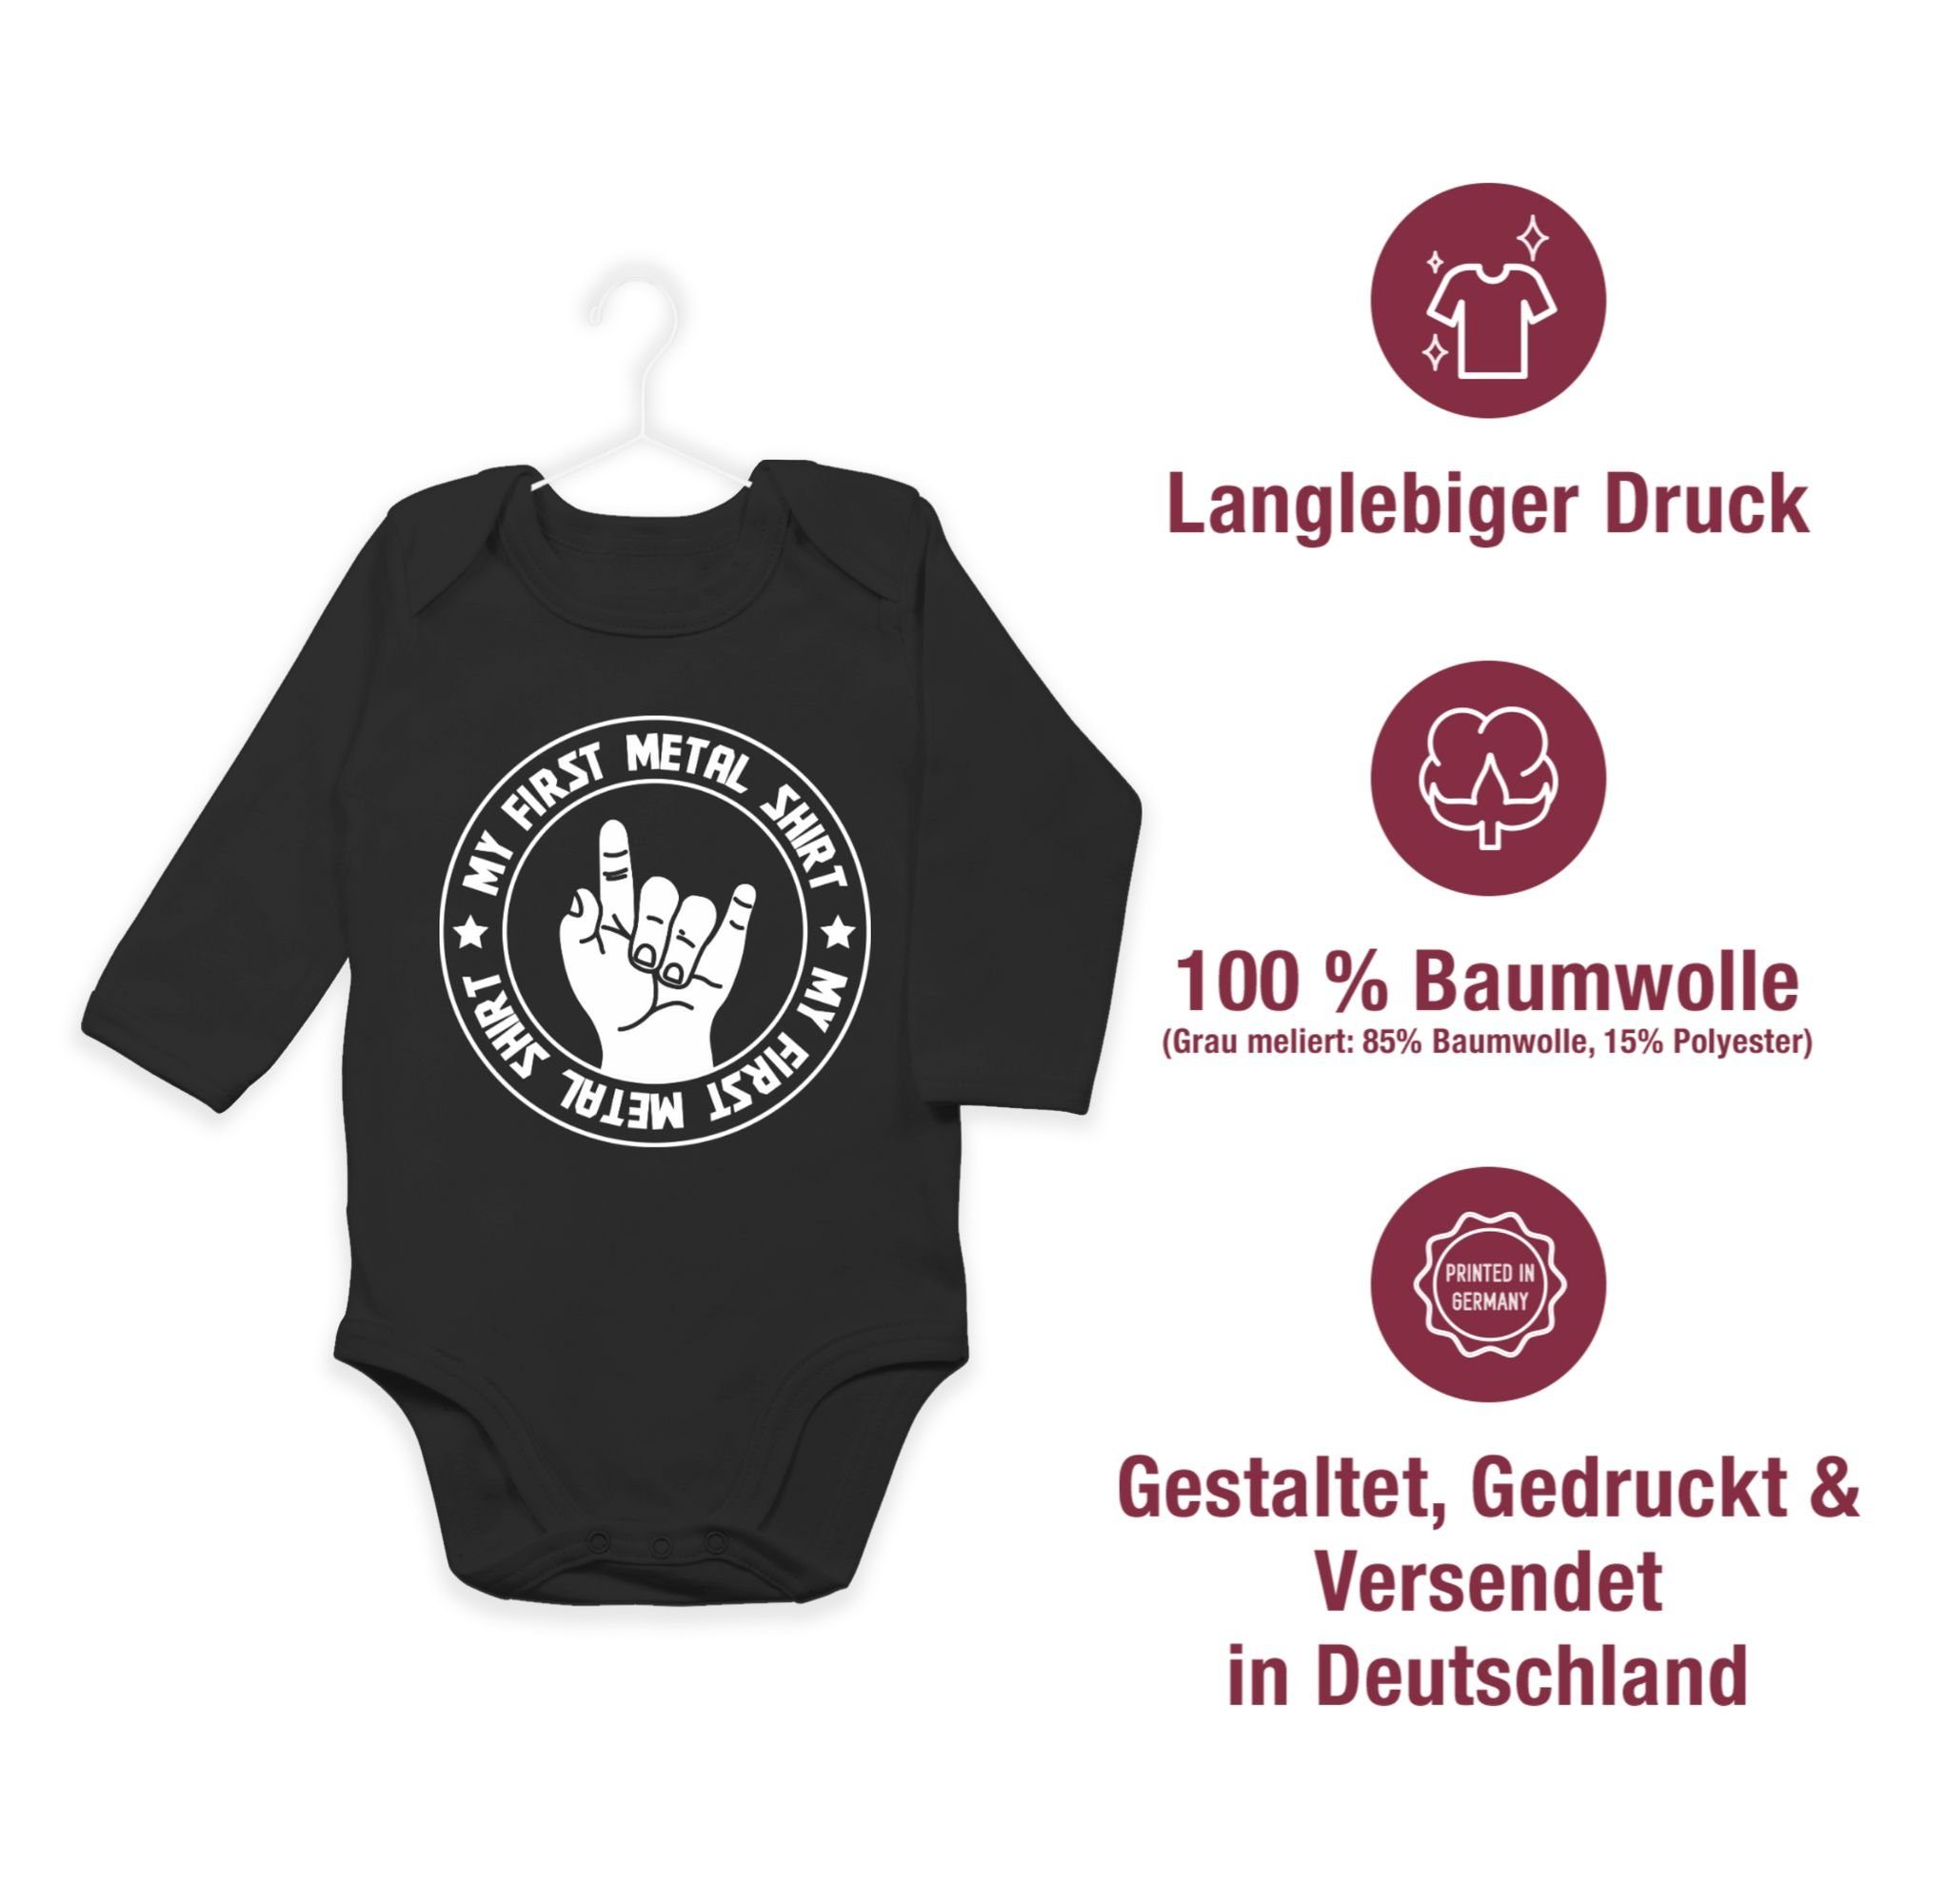 Shirtracer Shirtbody 1 first My Metal & Schwarz Shirt Baby Mädchen Junge Strampler